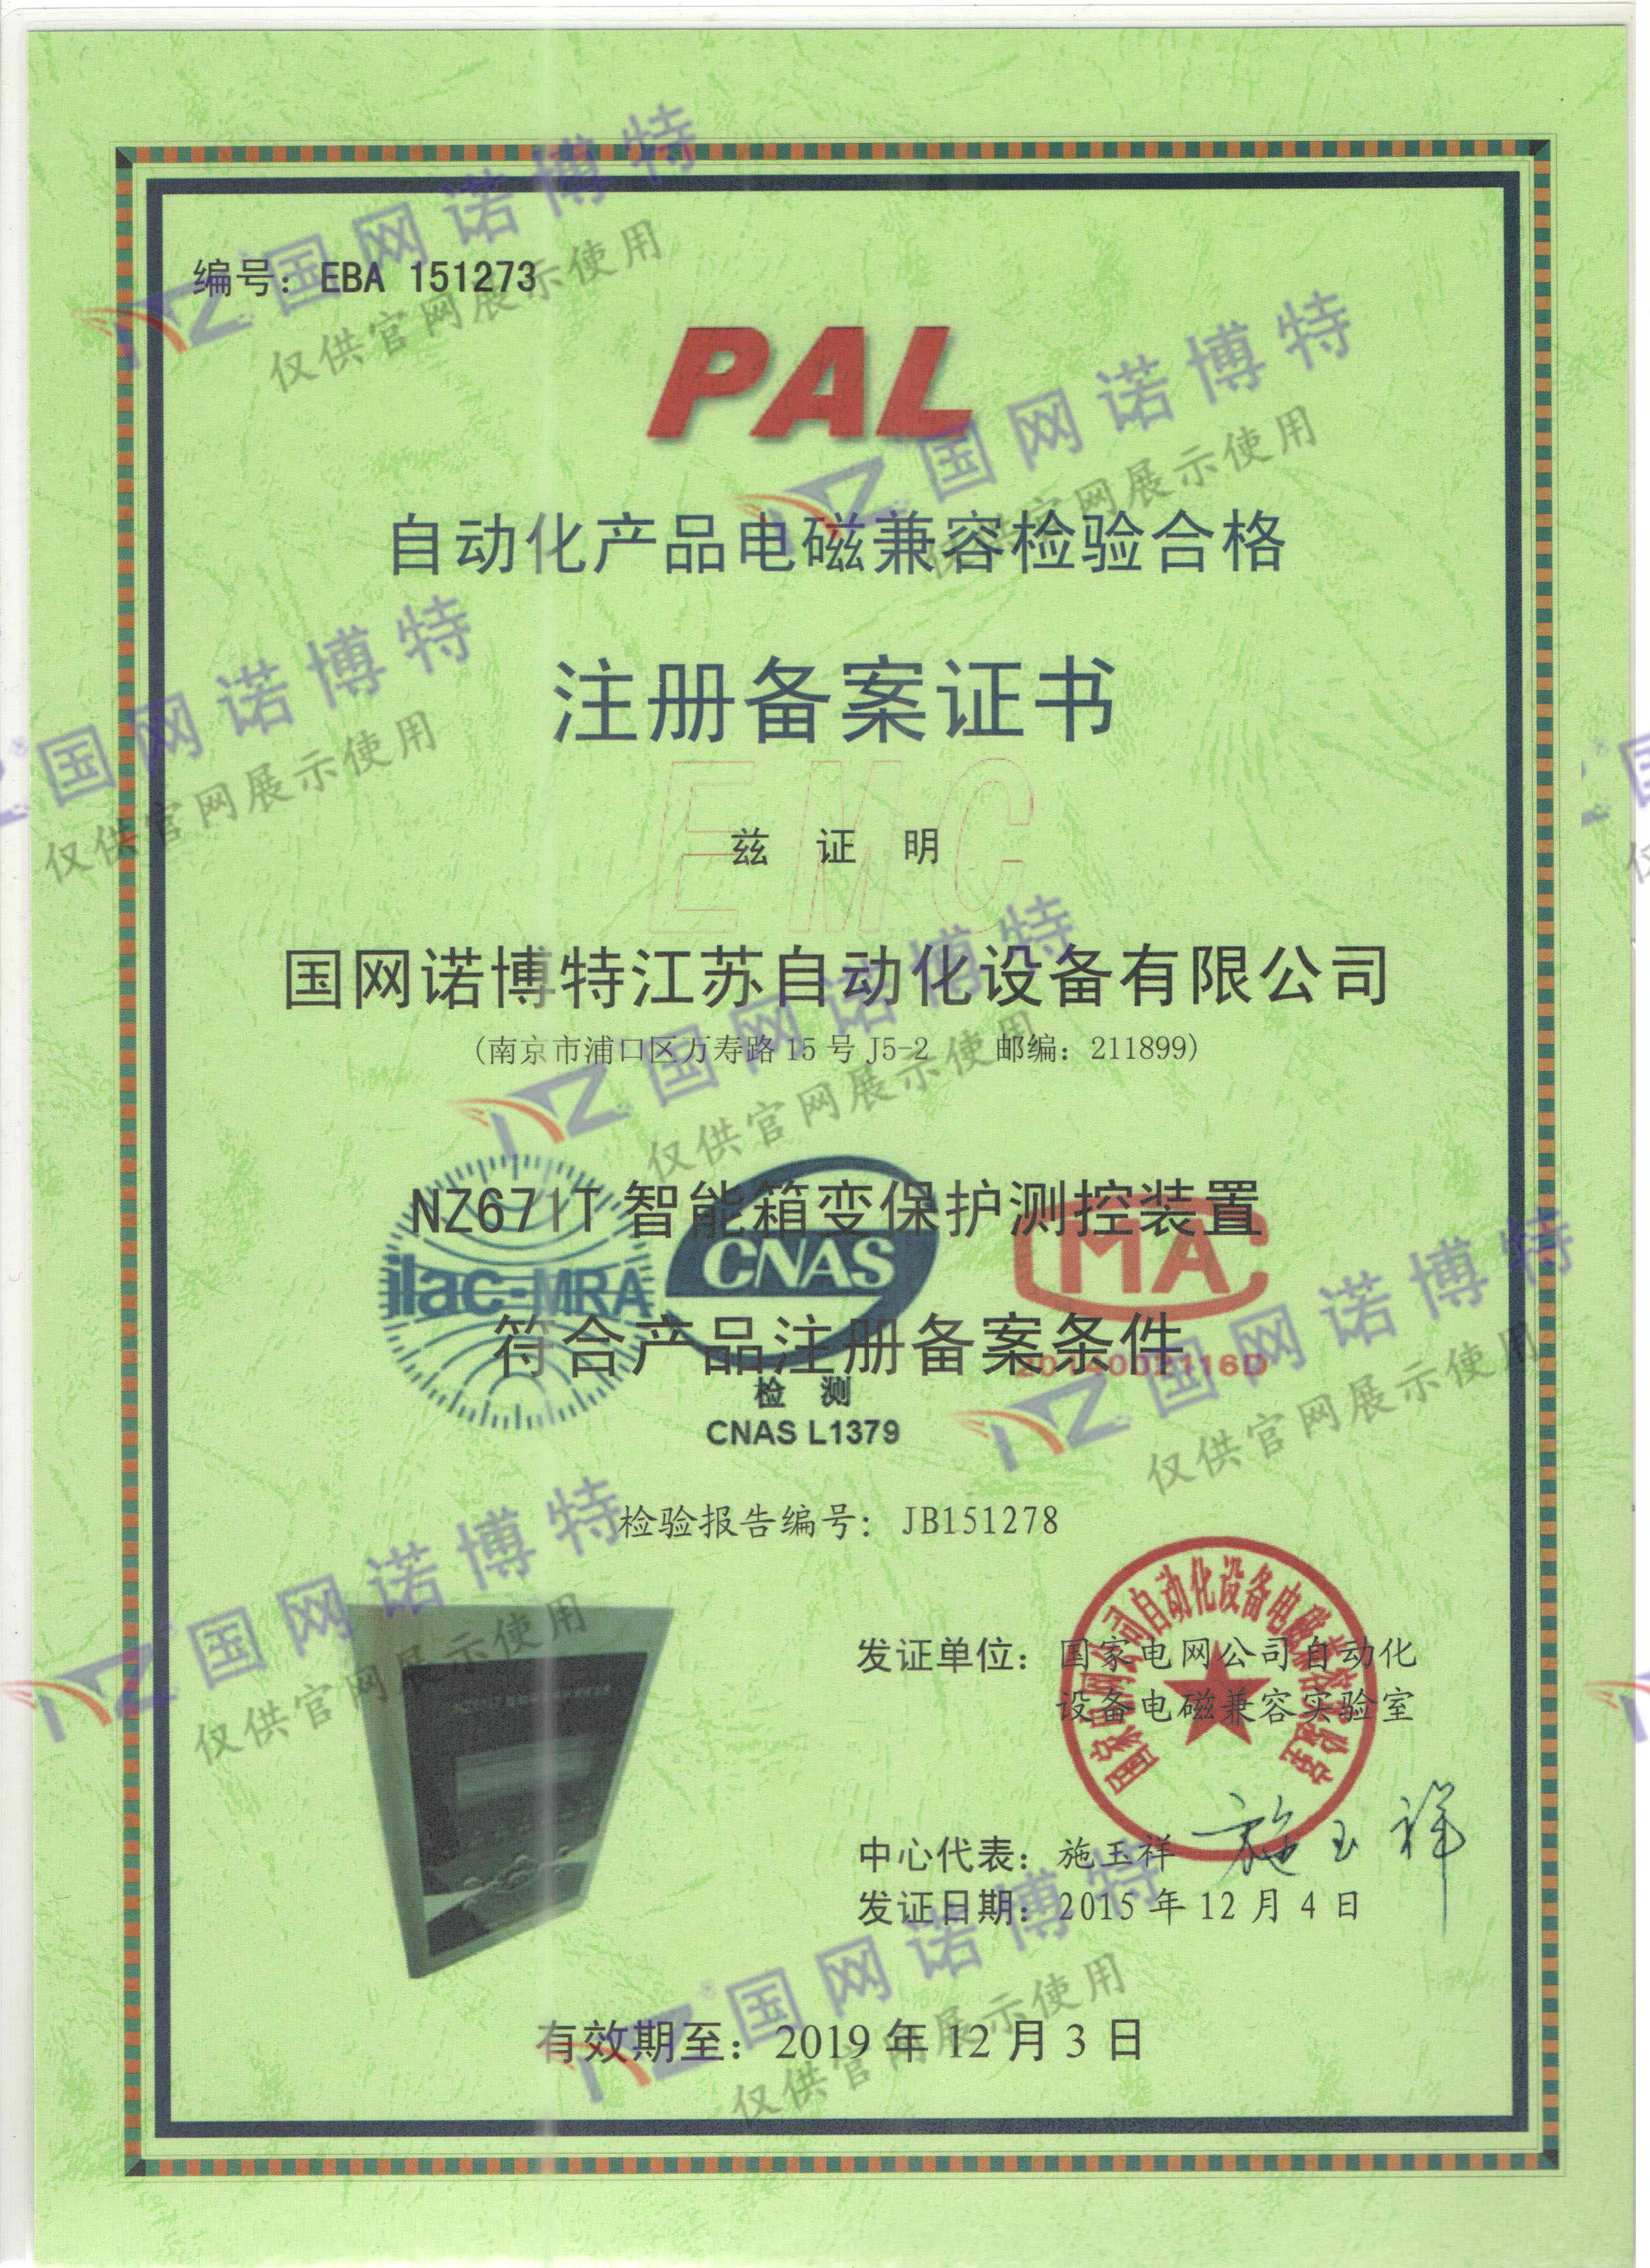 2019年-NZ671T PAL 证书 电磁兼容2-1